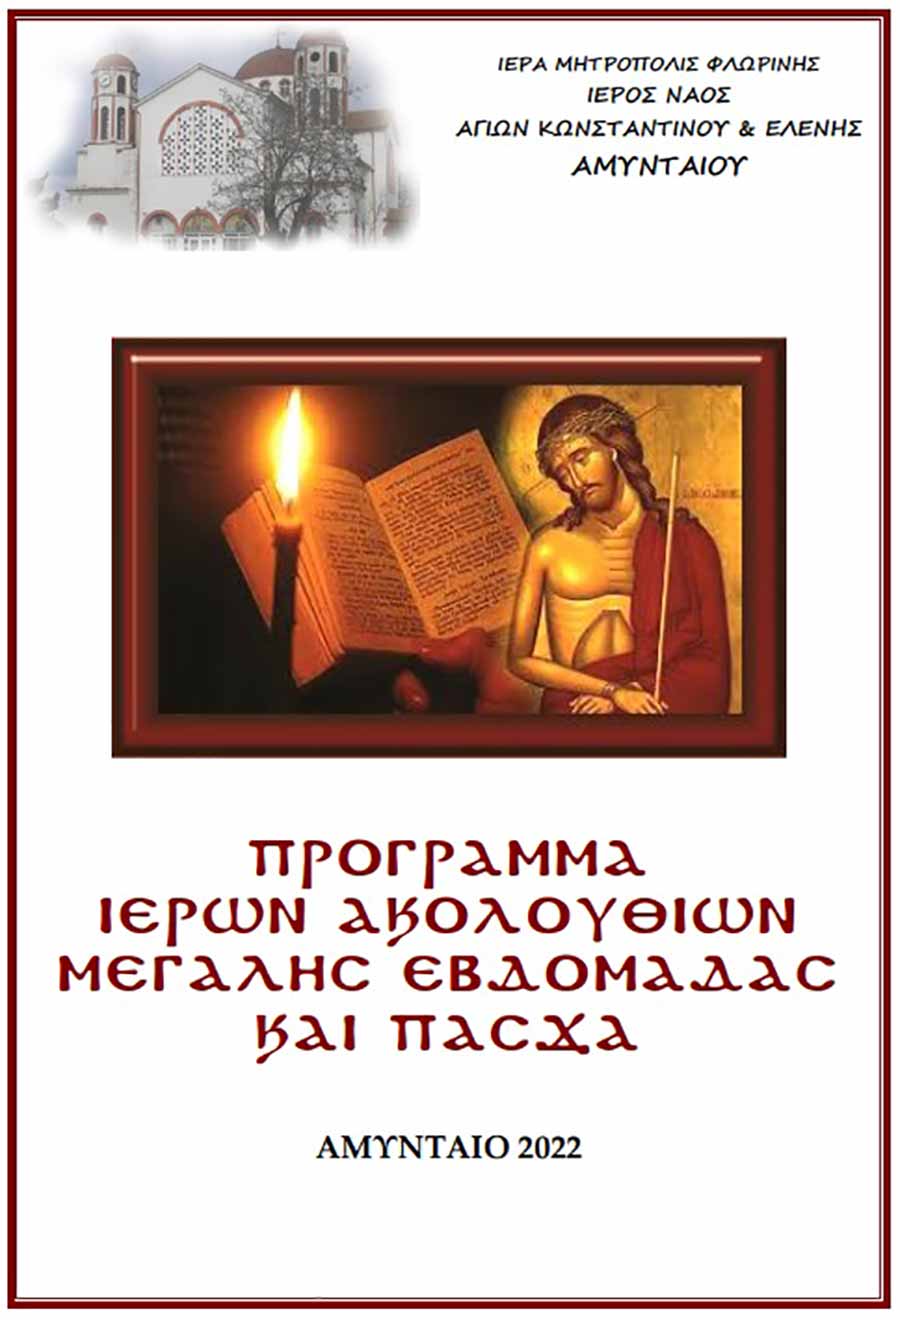 Ιερός Ναός Αγ. Κωνσταντίνου και Ελένης Αμυνταίου - Πρόγραμμα Μεγάλης Εβδομάδας και Πάσχα